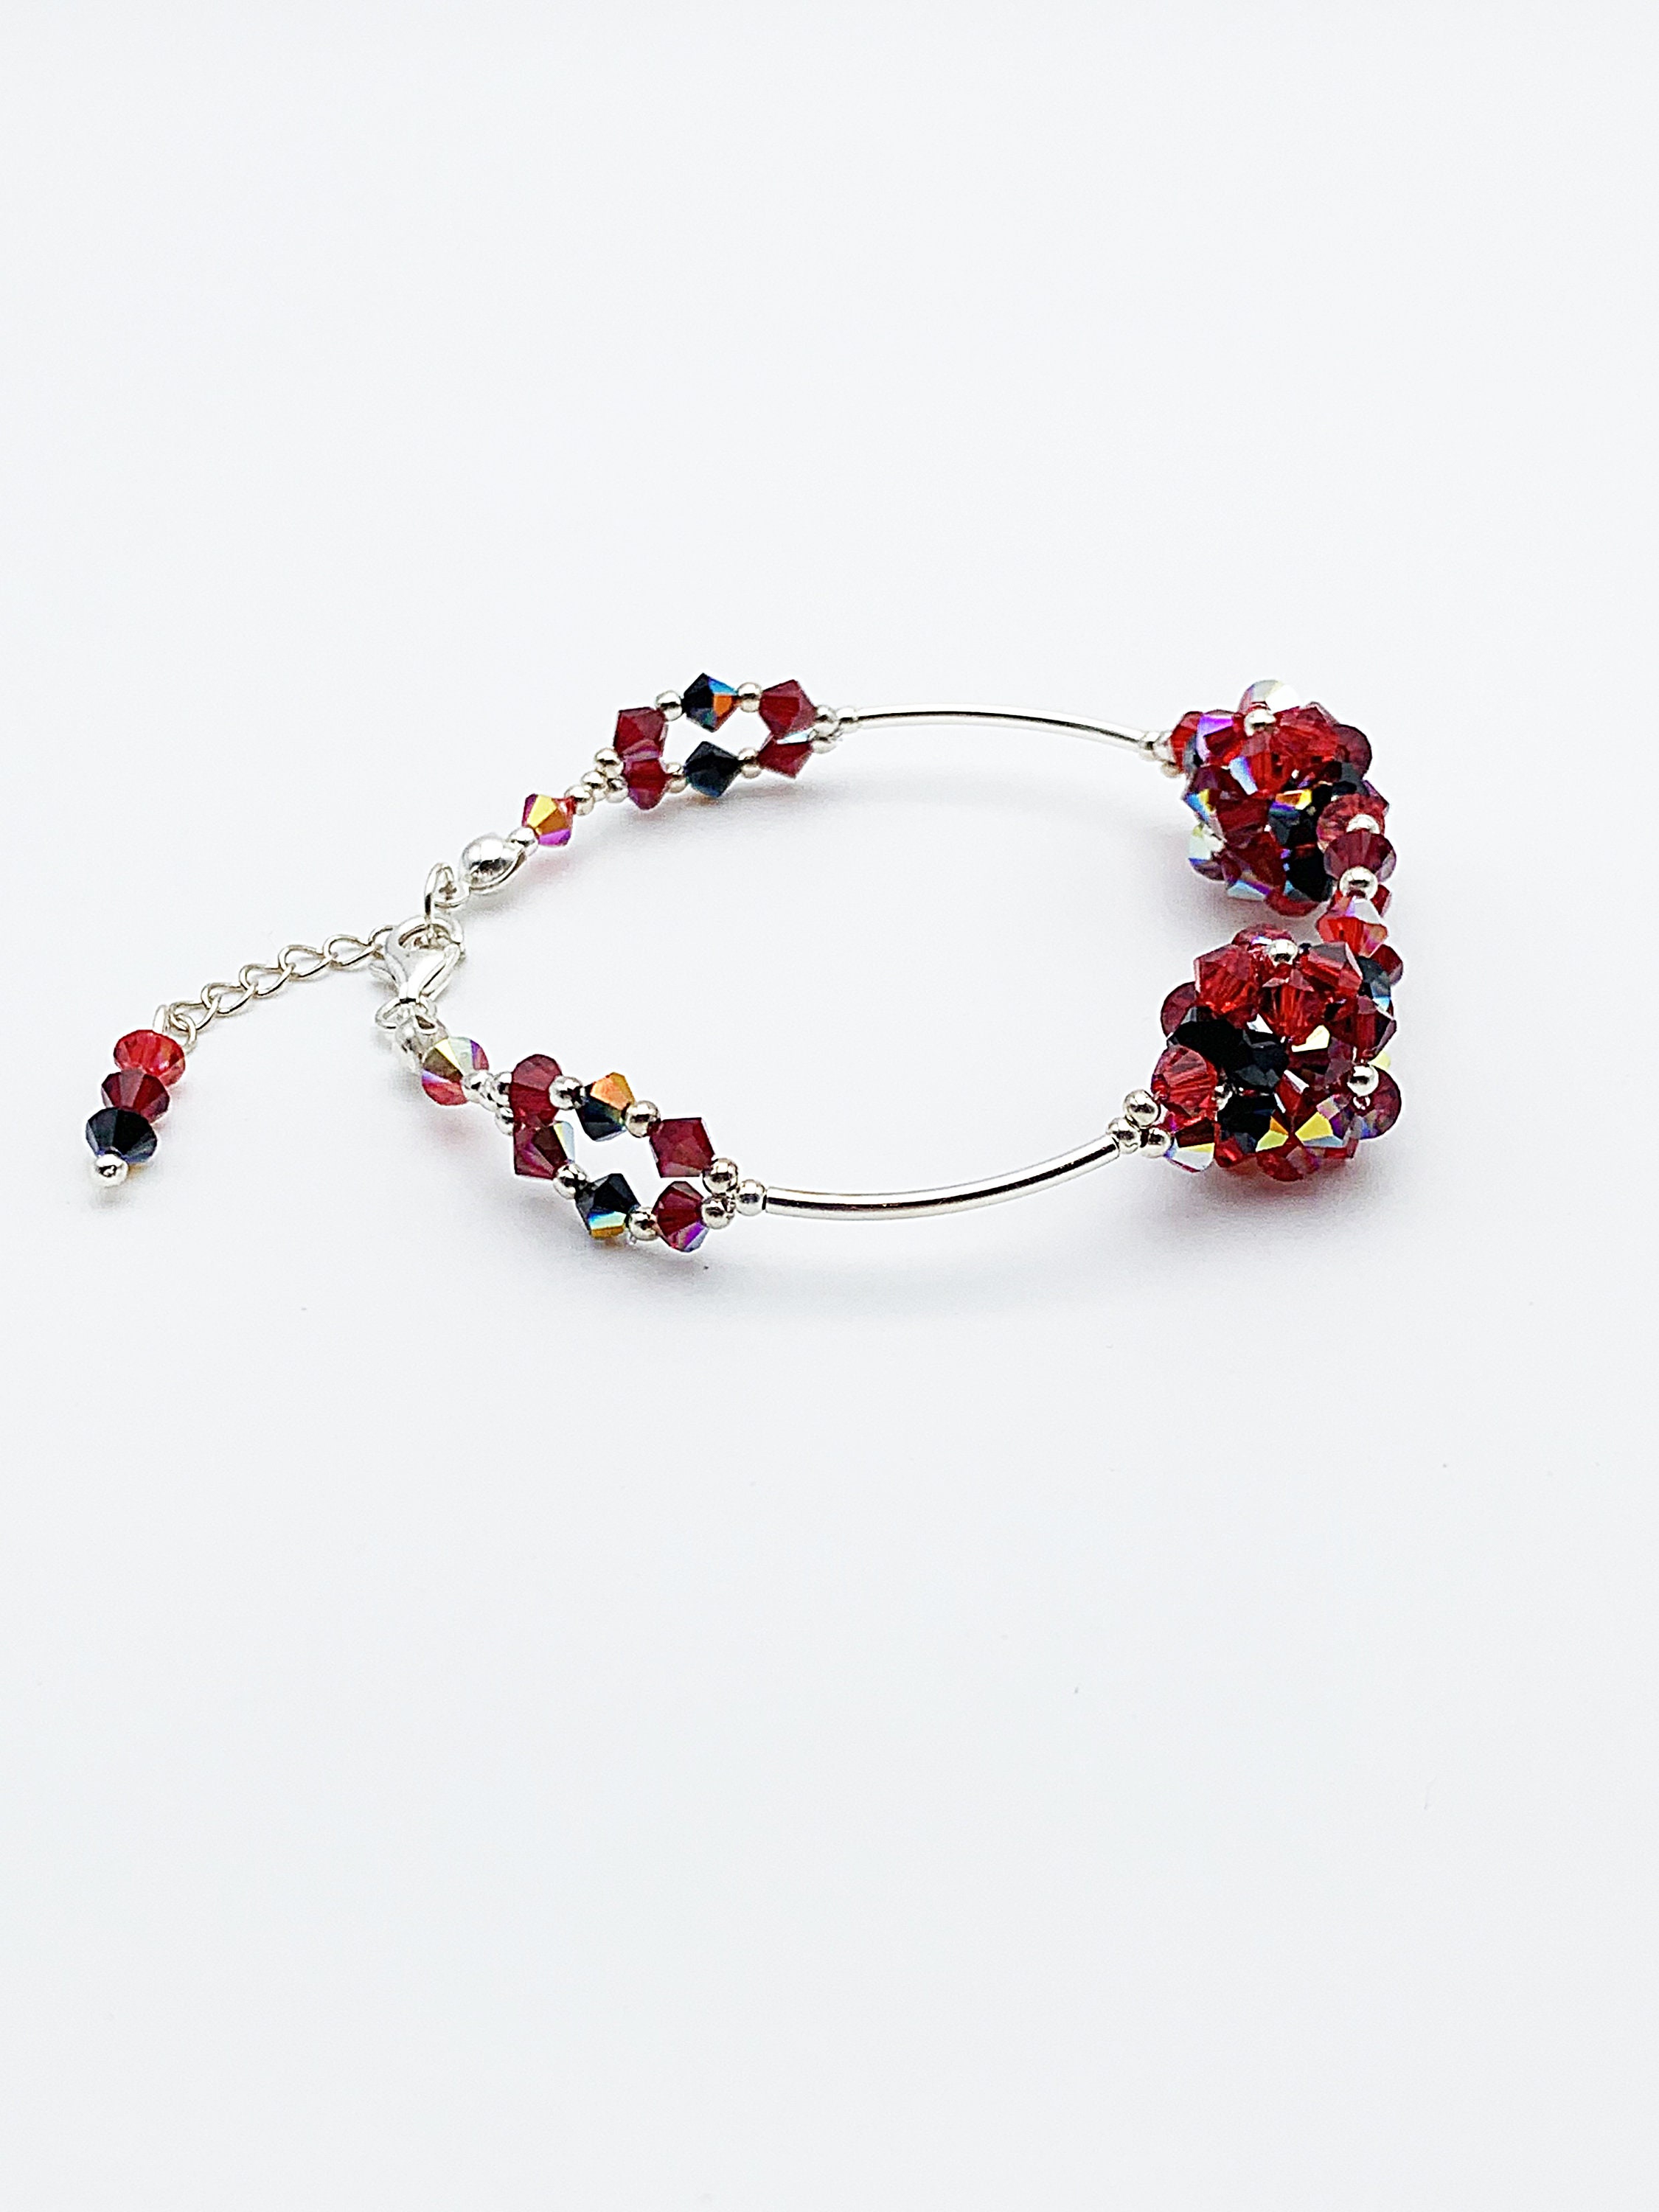 Red and Black Swarovski Crystal Bracelet Swarovski Jewelry - Etsy UK